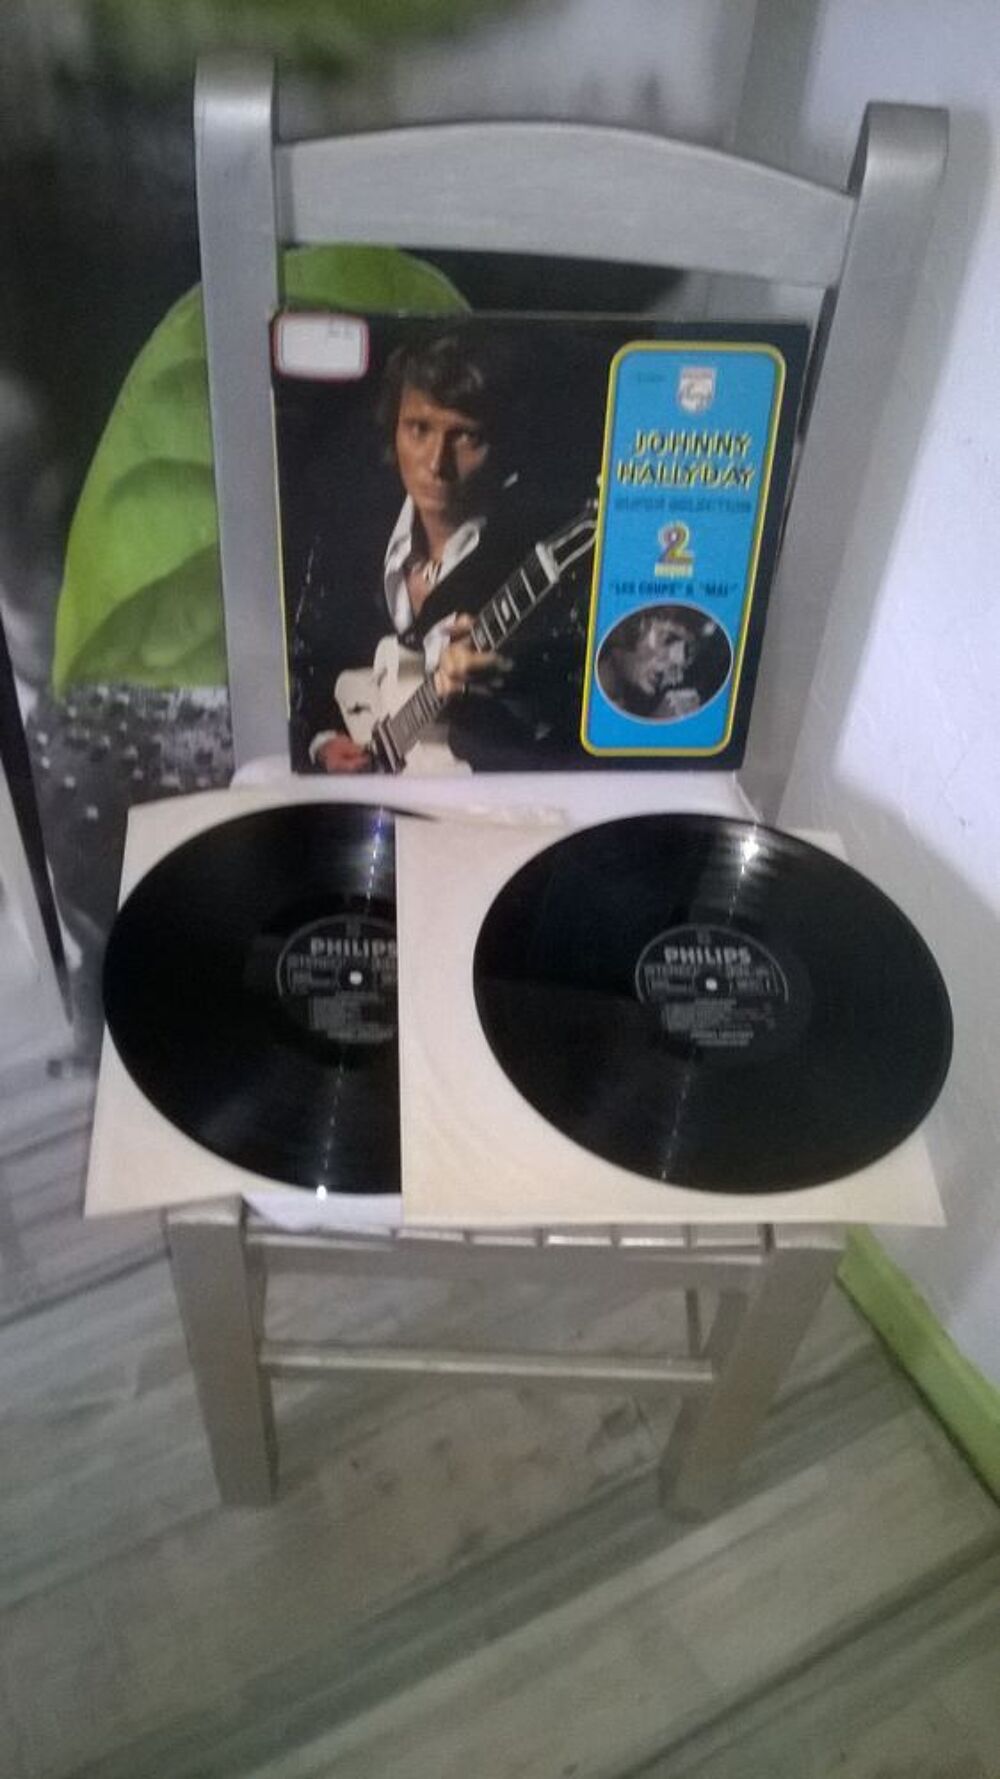 Vinyle Johnny Hallyday
Les Coups &amp; Mal
1966
Bon etat
Dou CD et vinyles